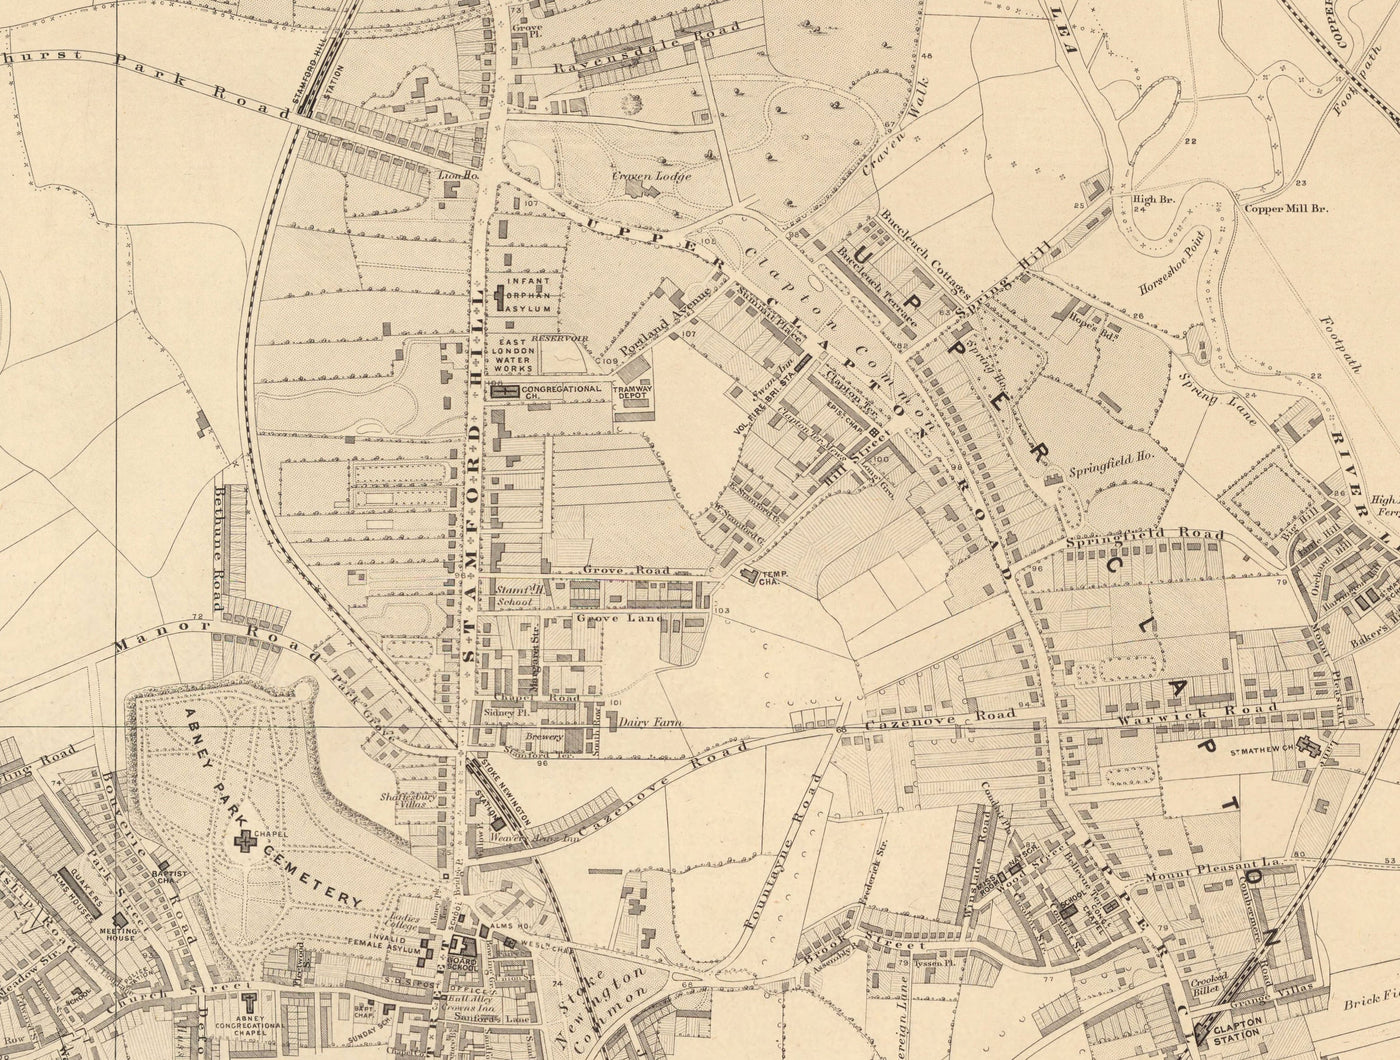 Alte Karte von North London, 1862 von Edward Stanford - Finsbury Park, Hackney Downs, Stoke Newington, Clapton - N4, N5, N15, N16, E5